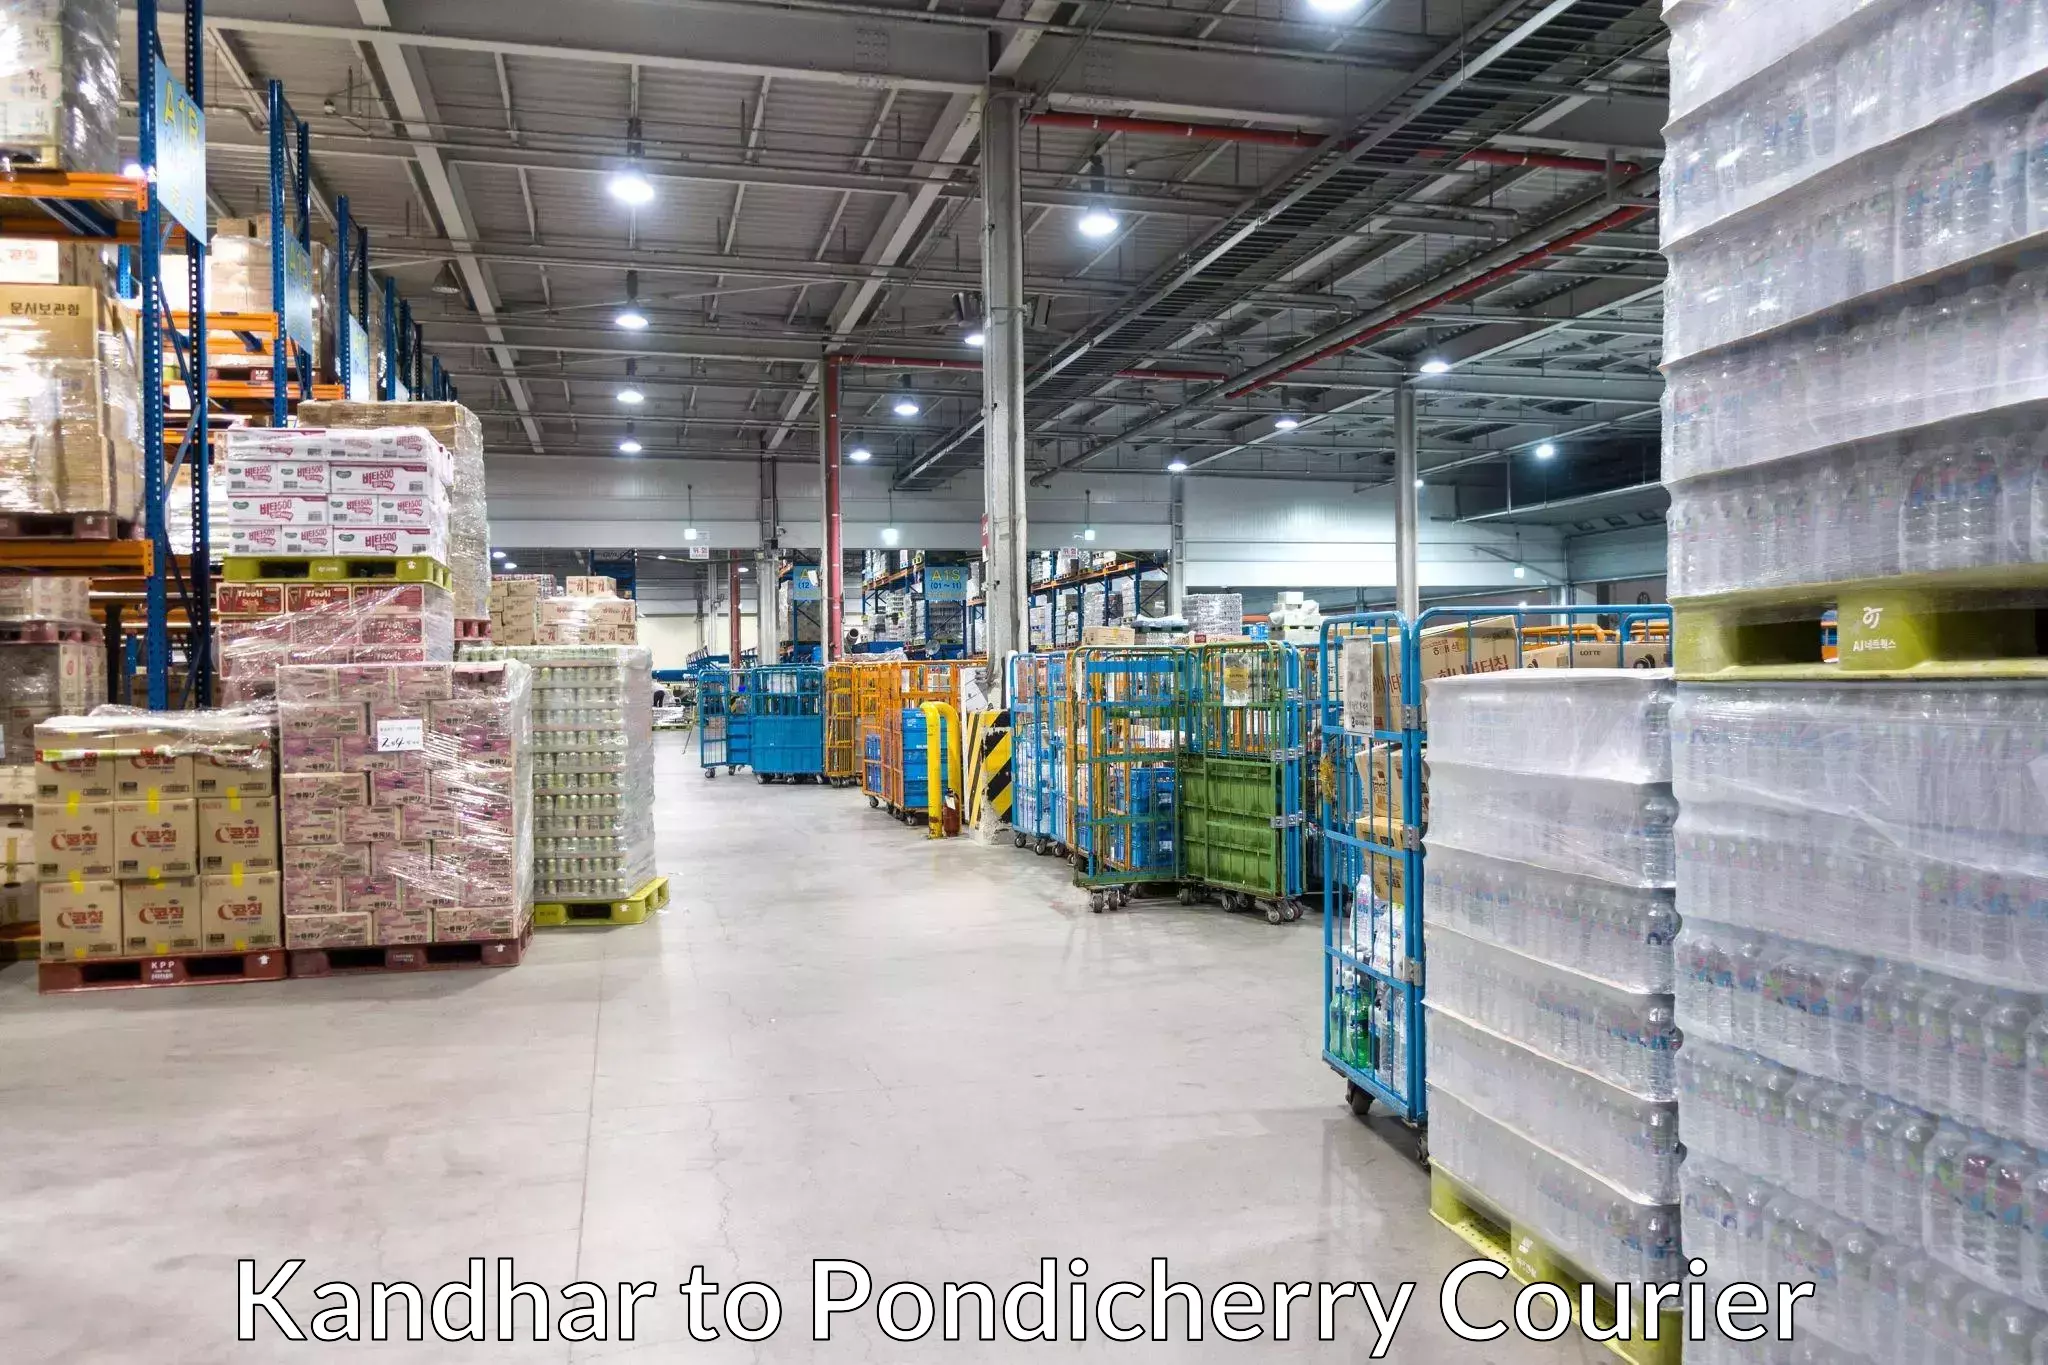 Cargo courier service Kandhar to Pondicherry